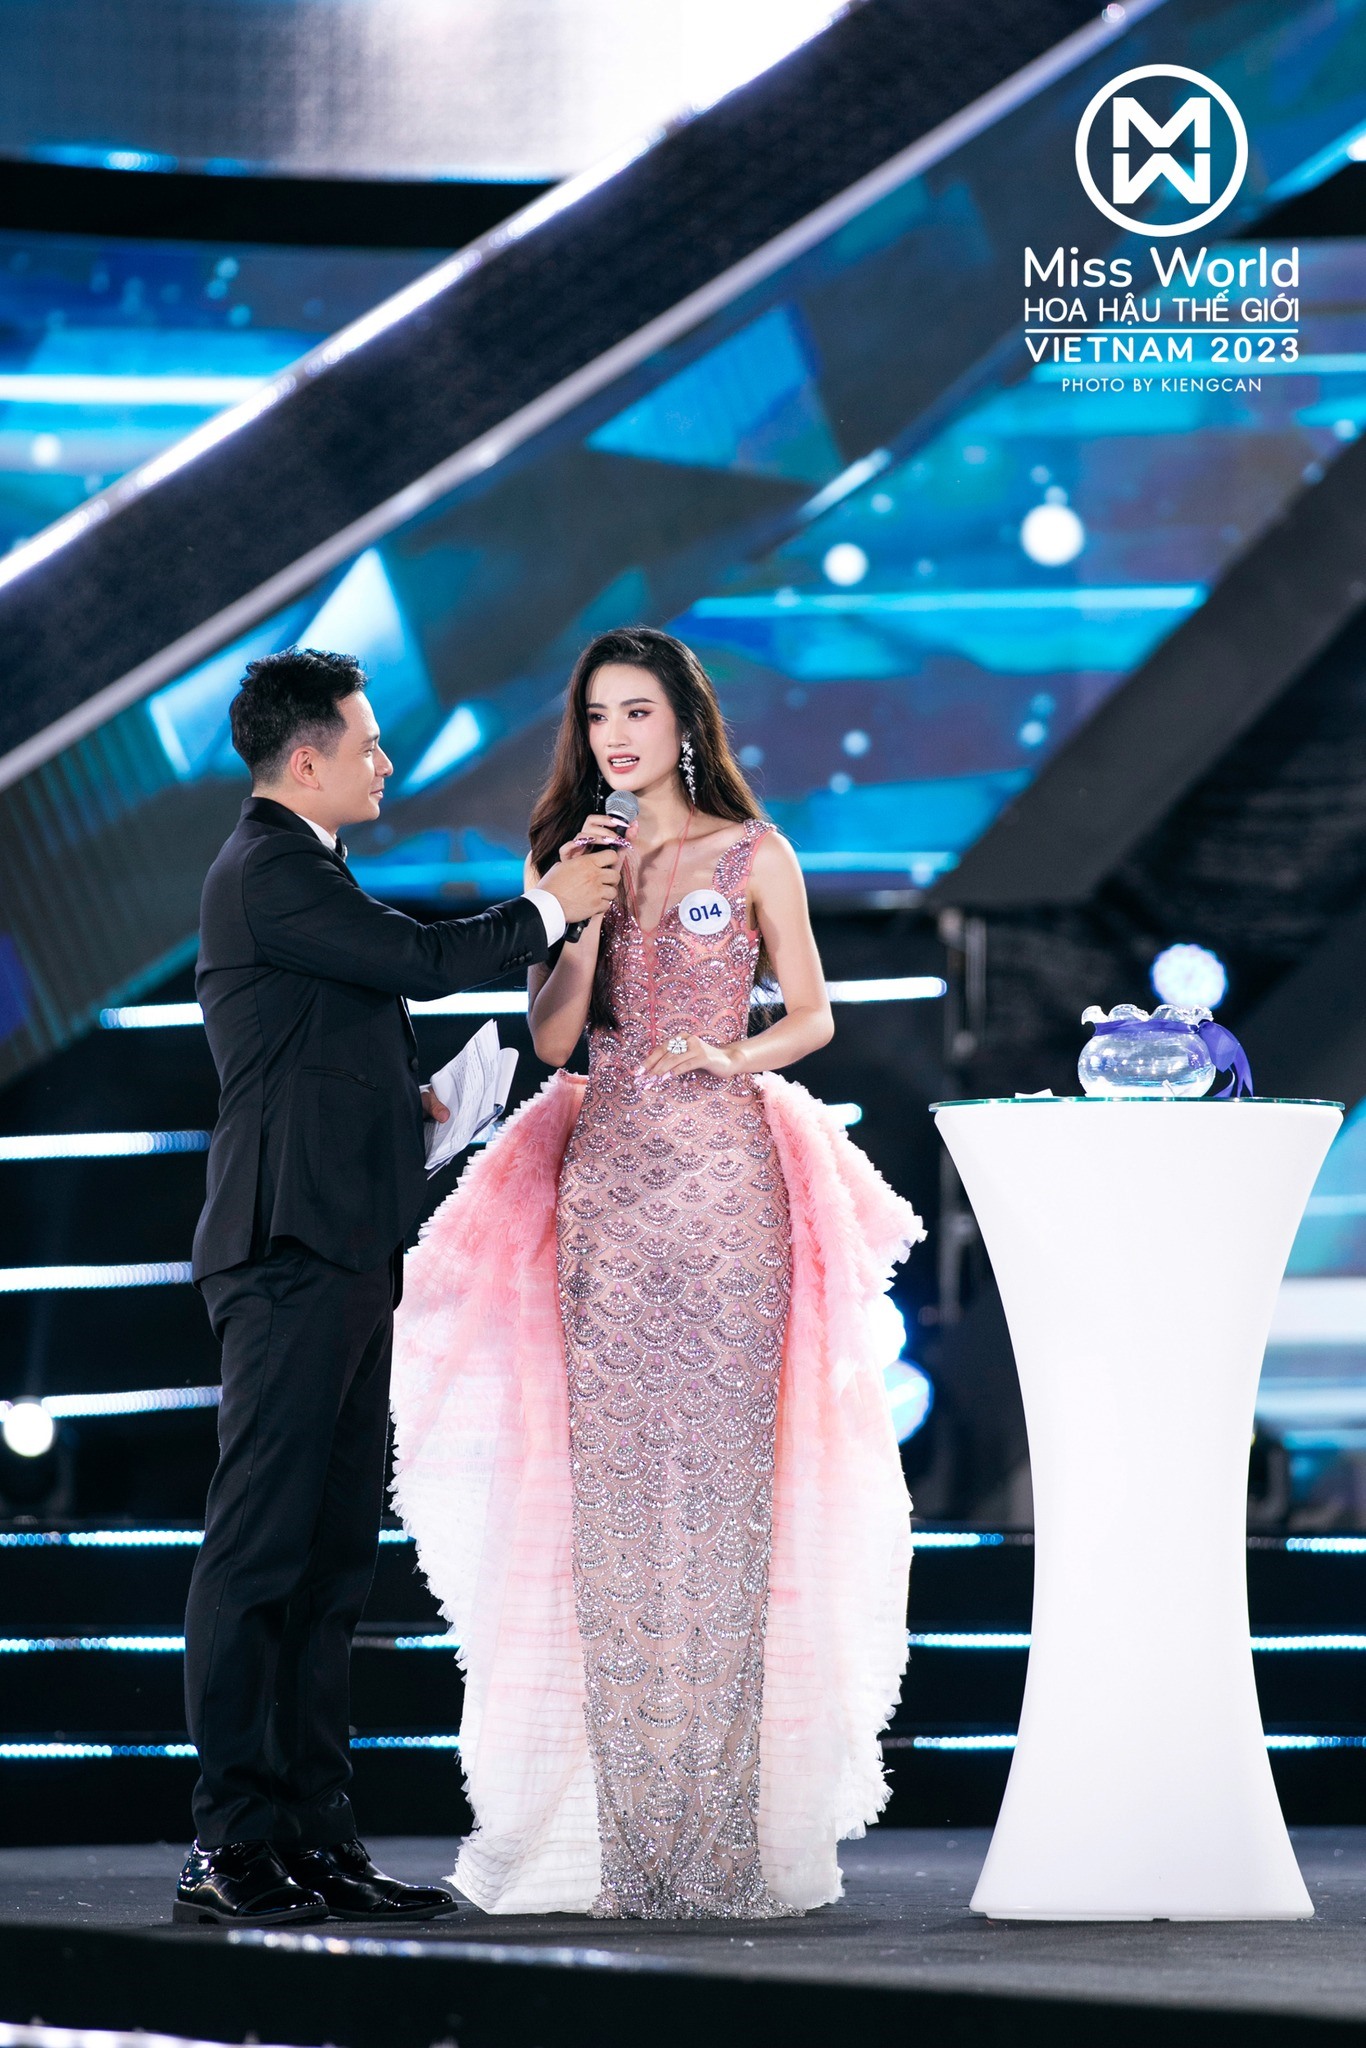 Hành Trình đăng Quang Của Hoa Hậu Huỳnh Trần Ý Nhi Tân Miss World Việt Nam 2023